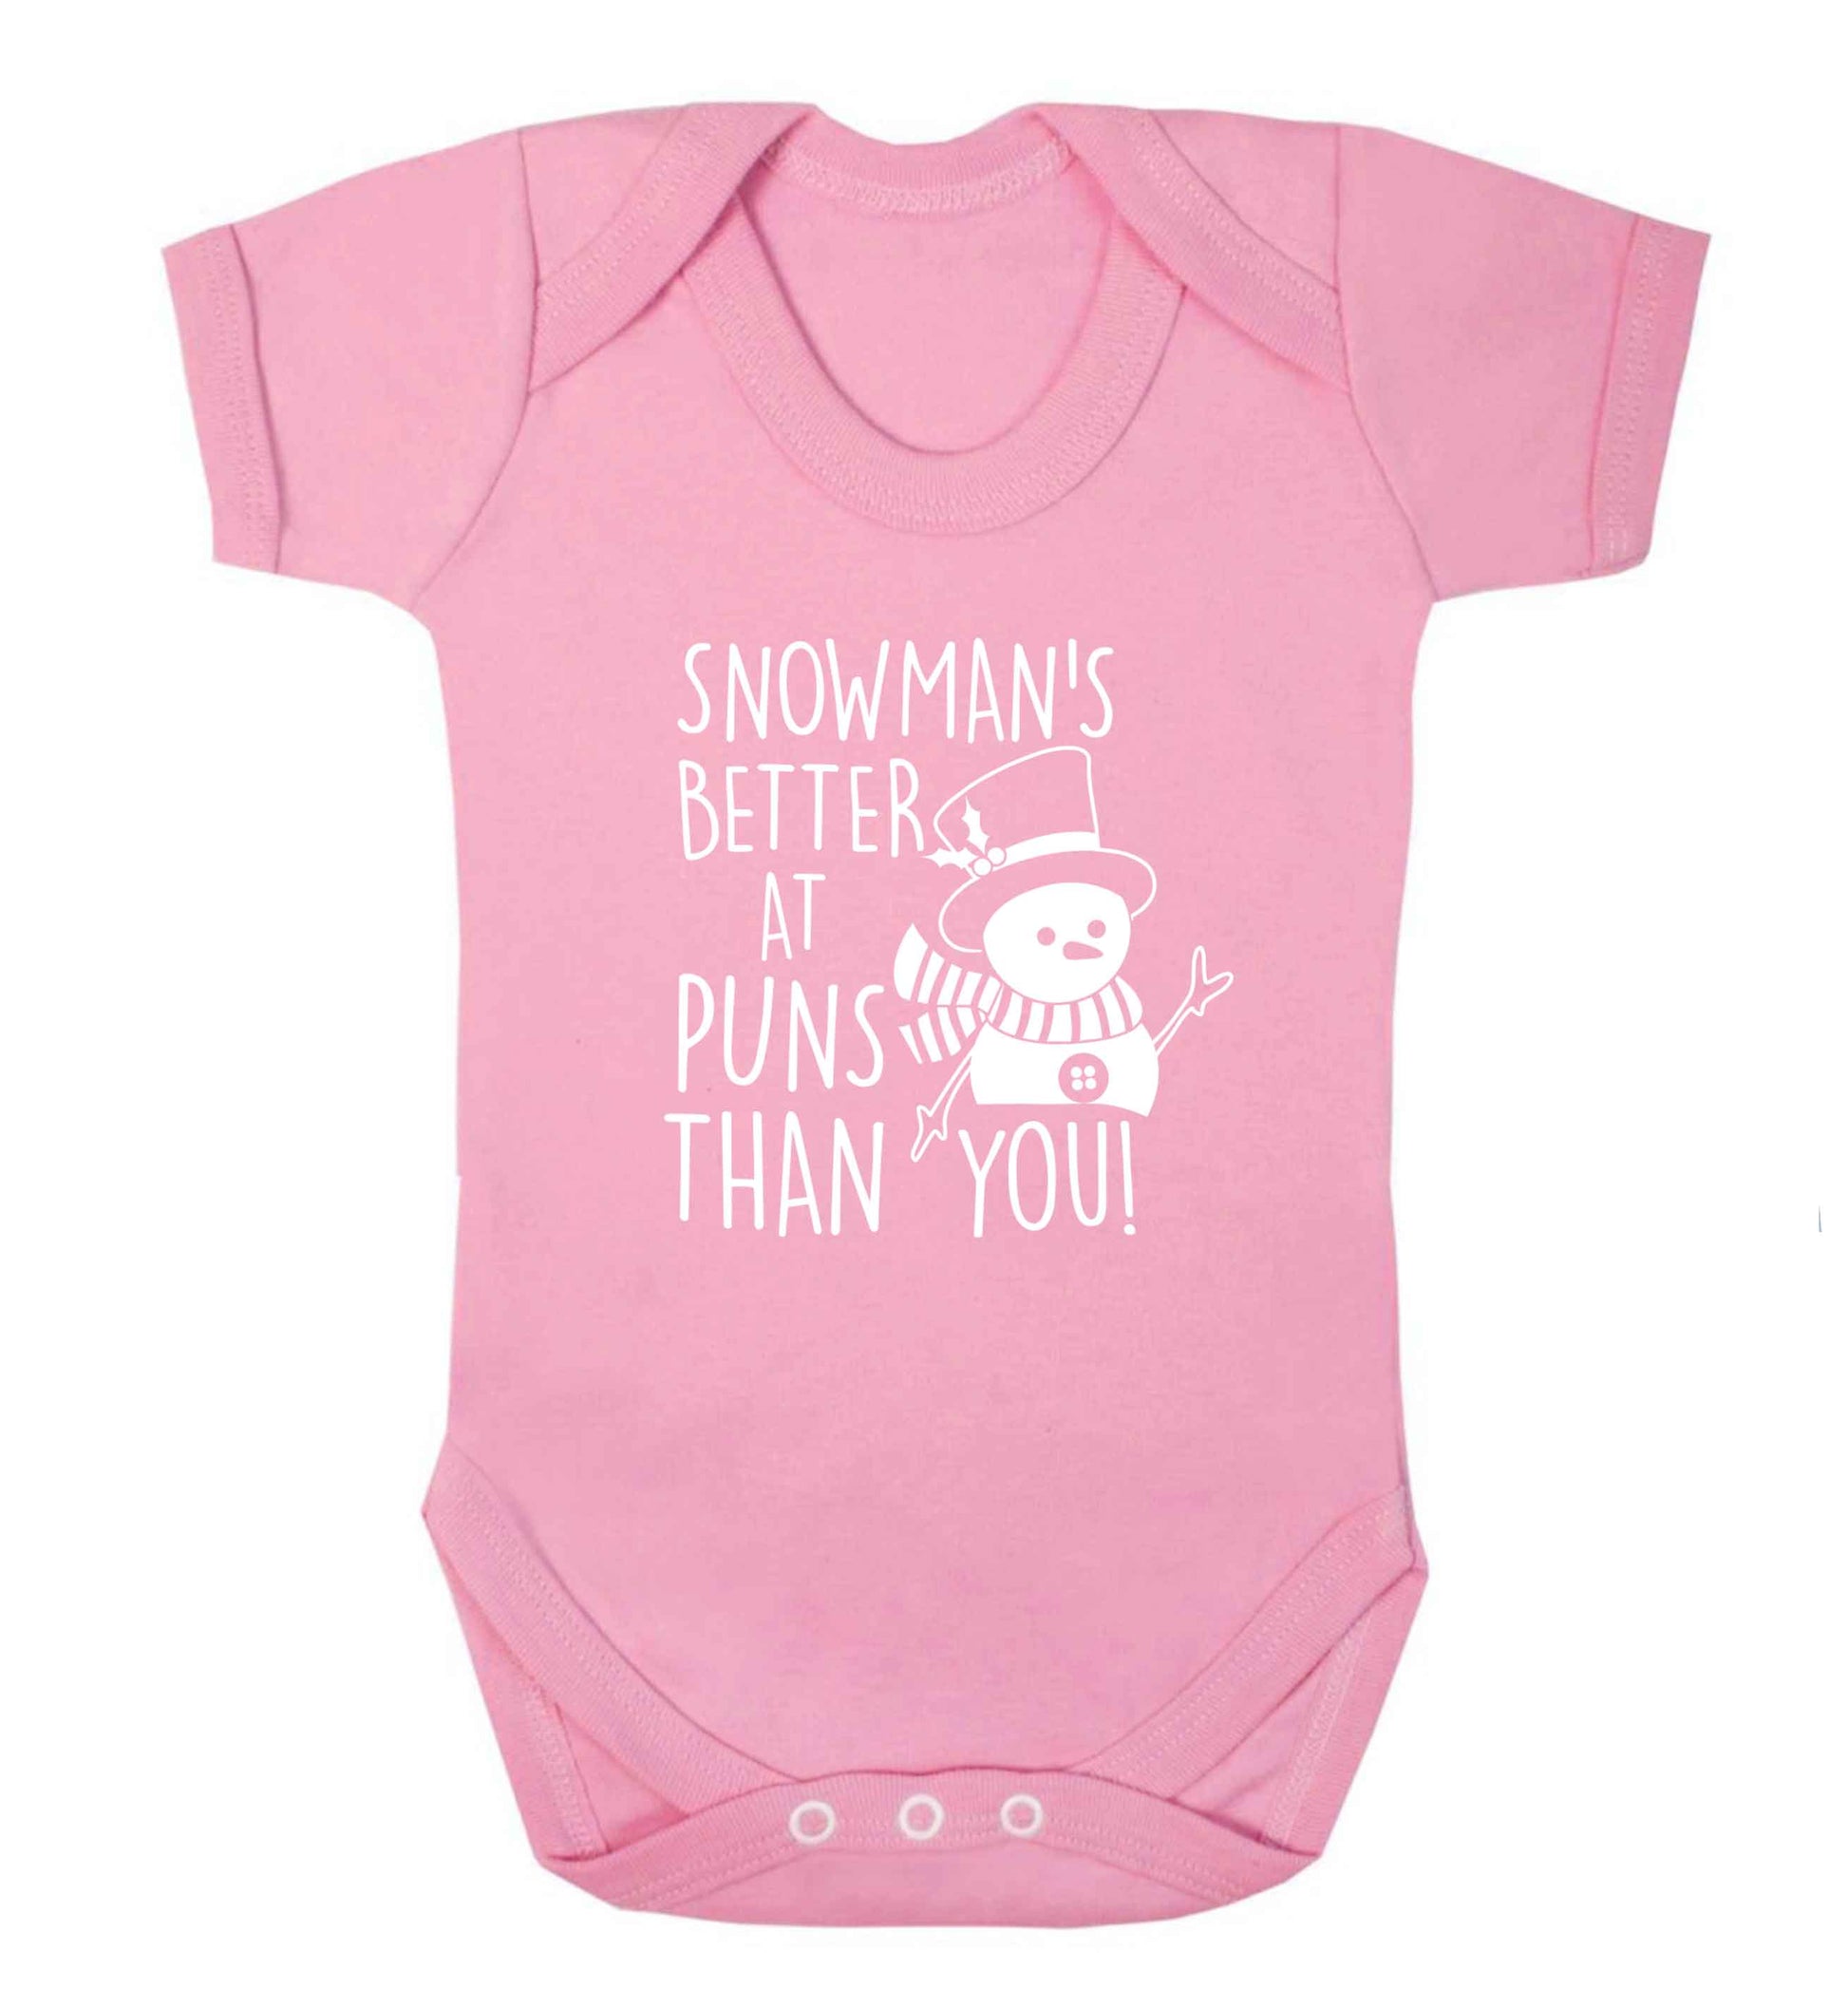 Snowman's Puns You baby vest pale pink 18-24 months